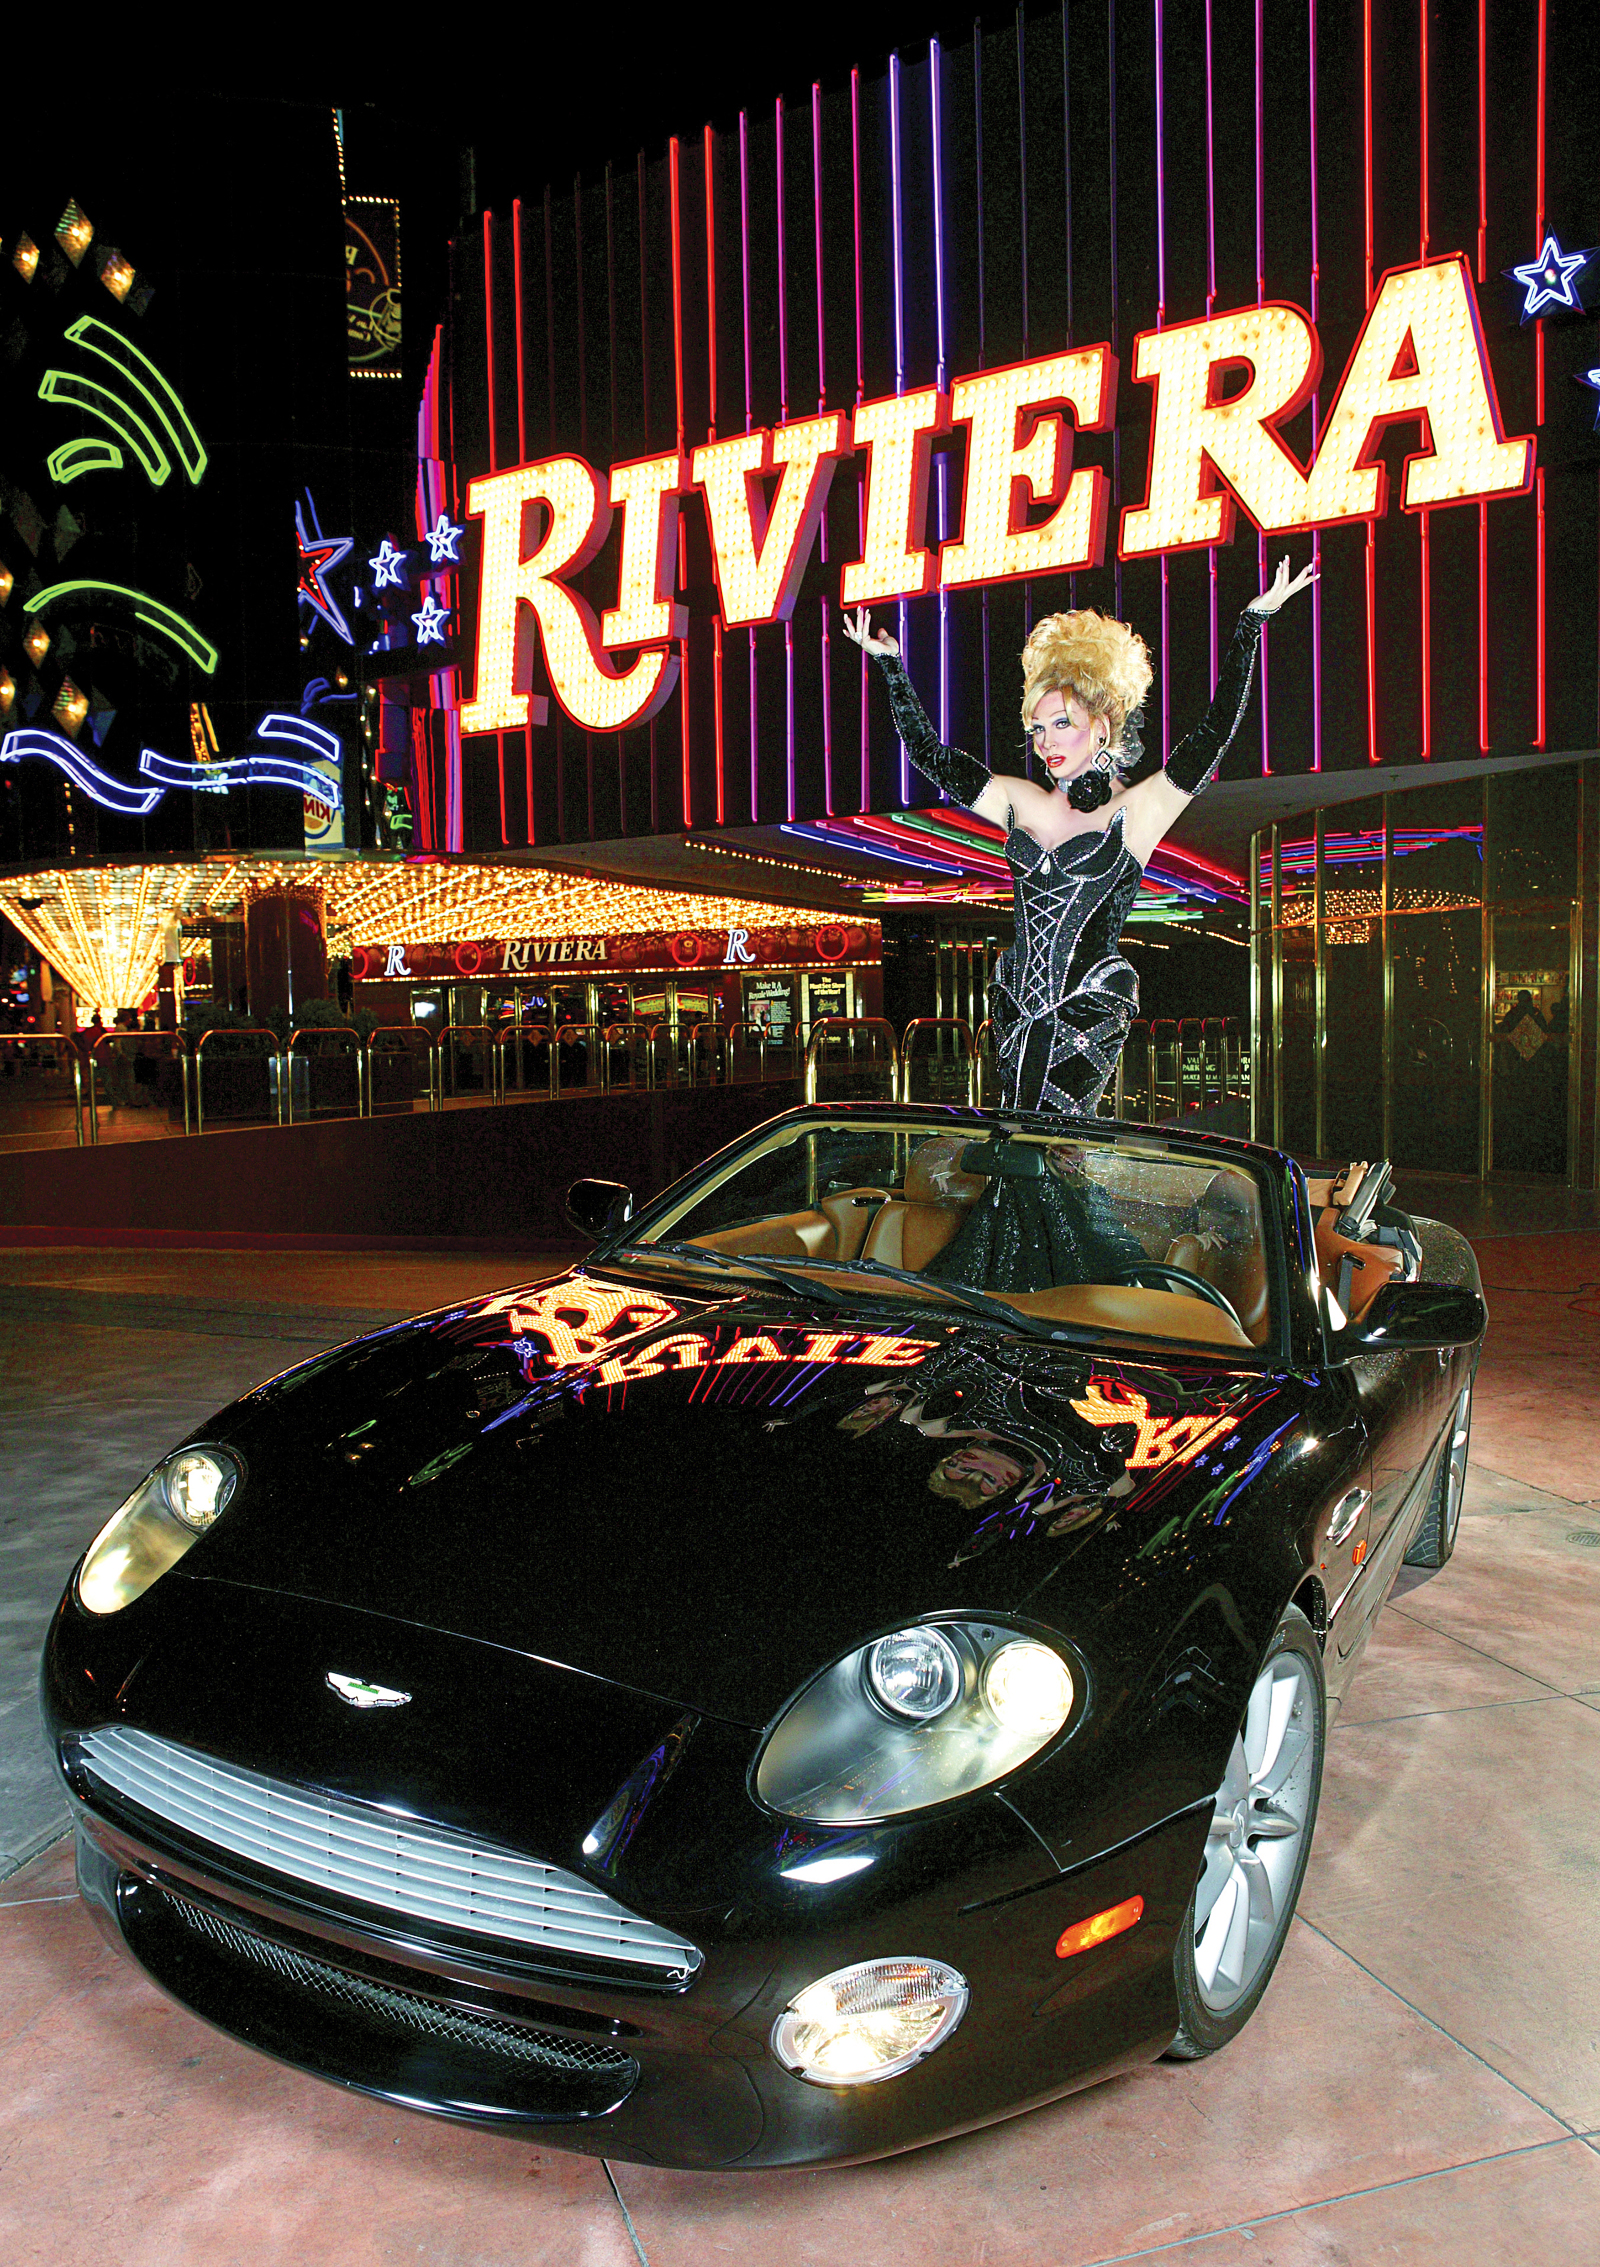 Dear Riviera, you're breaking my heart - Las Vegas Weekly